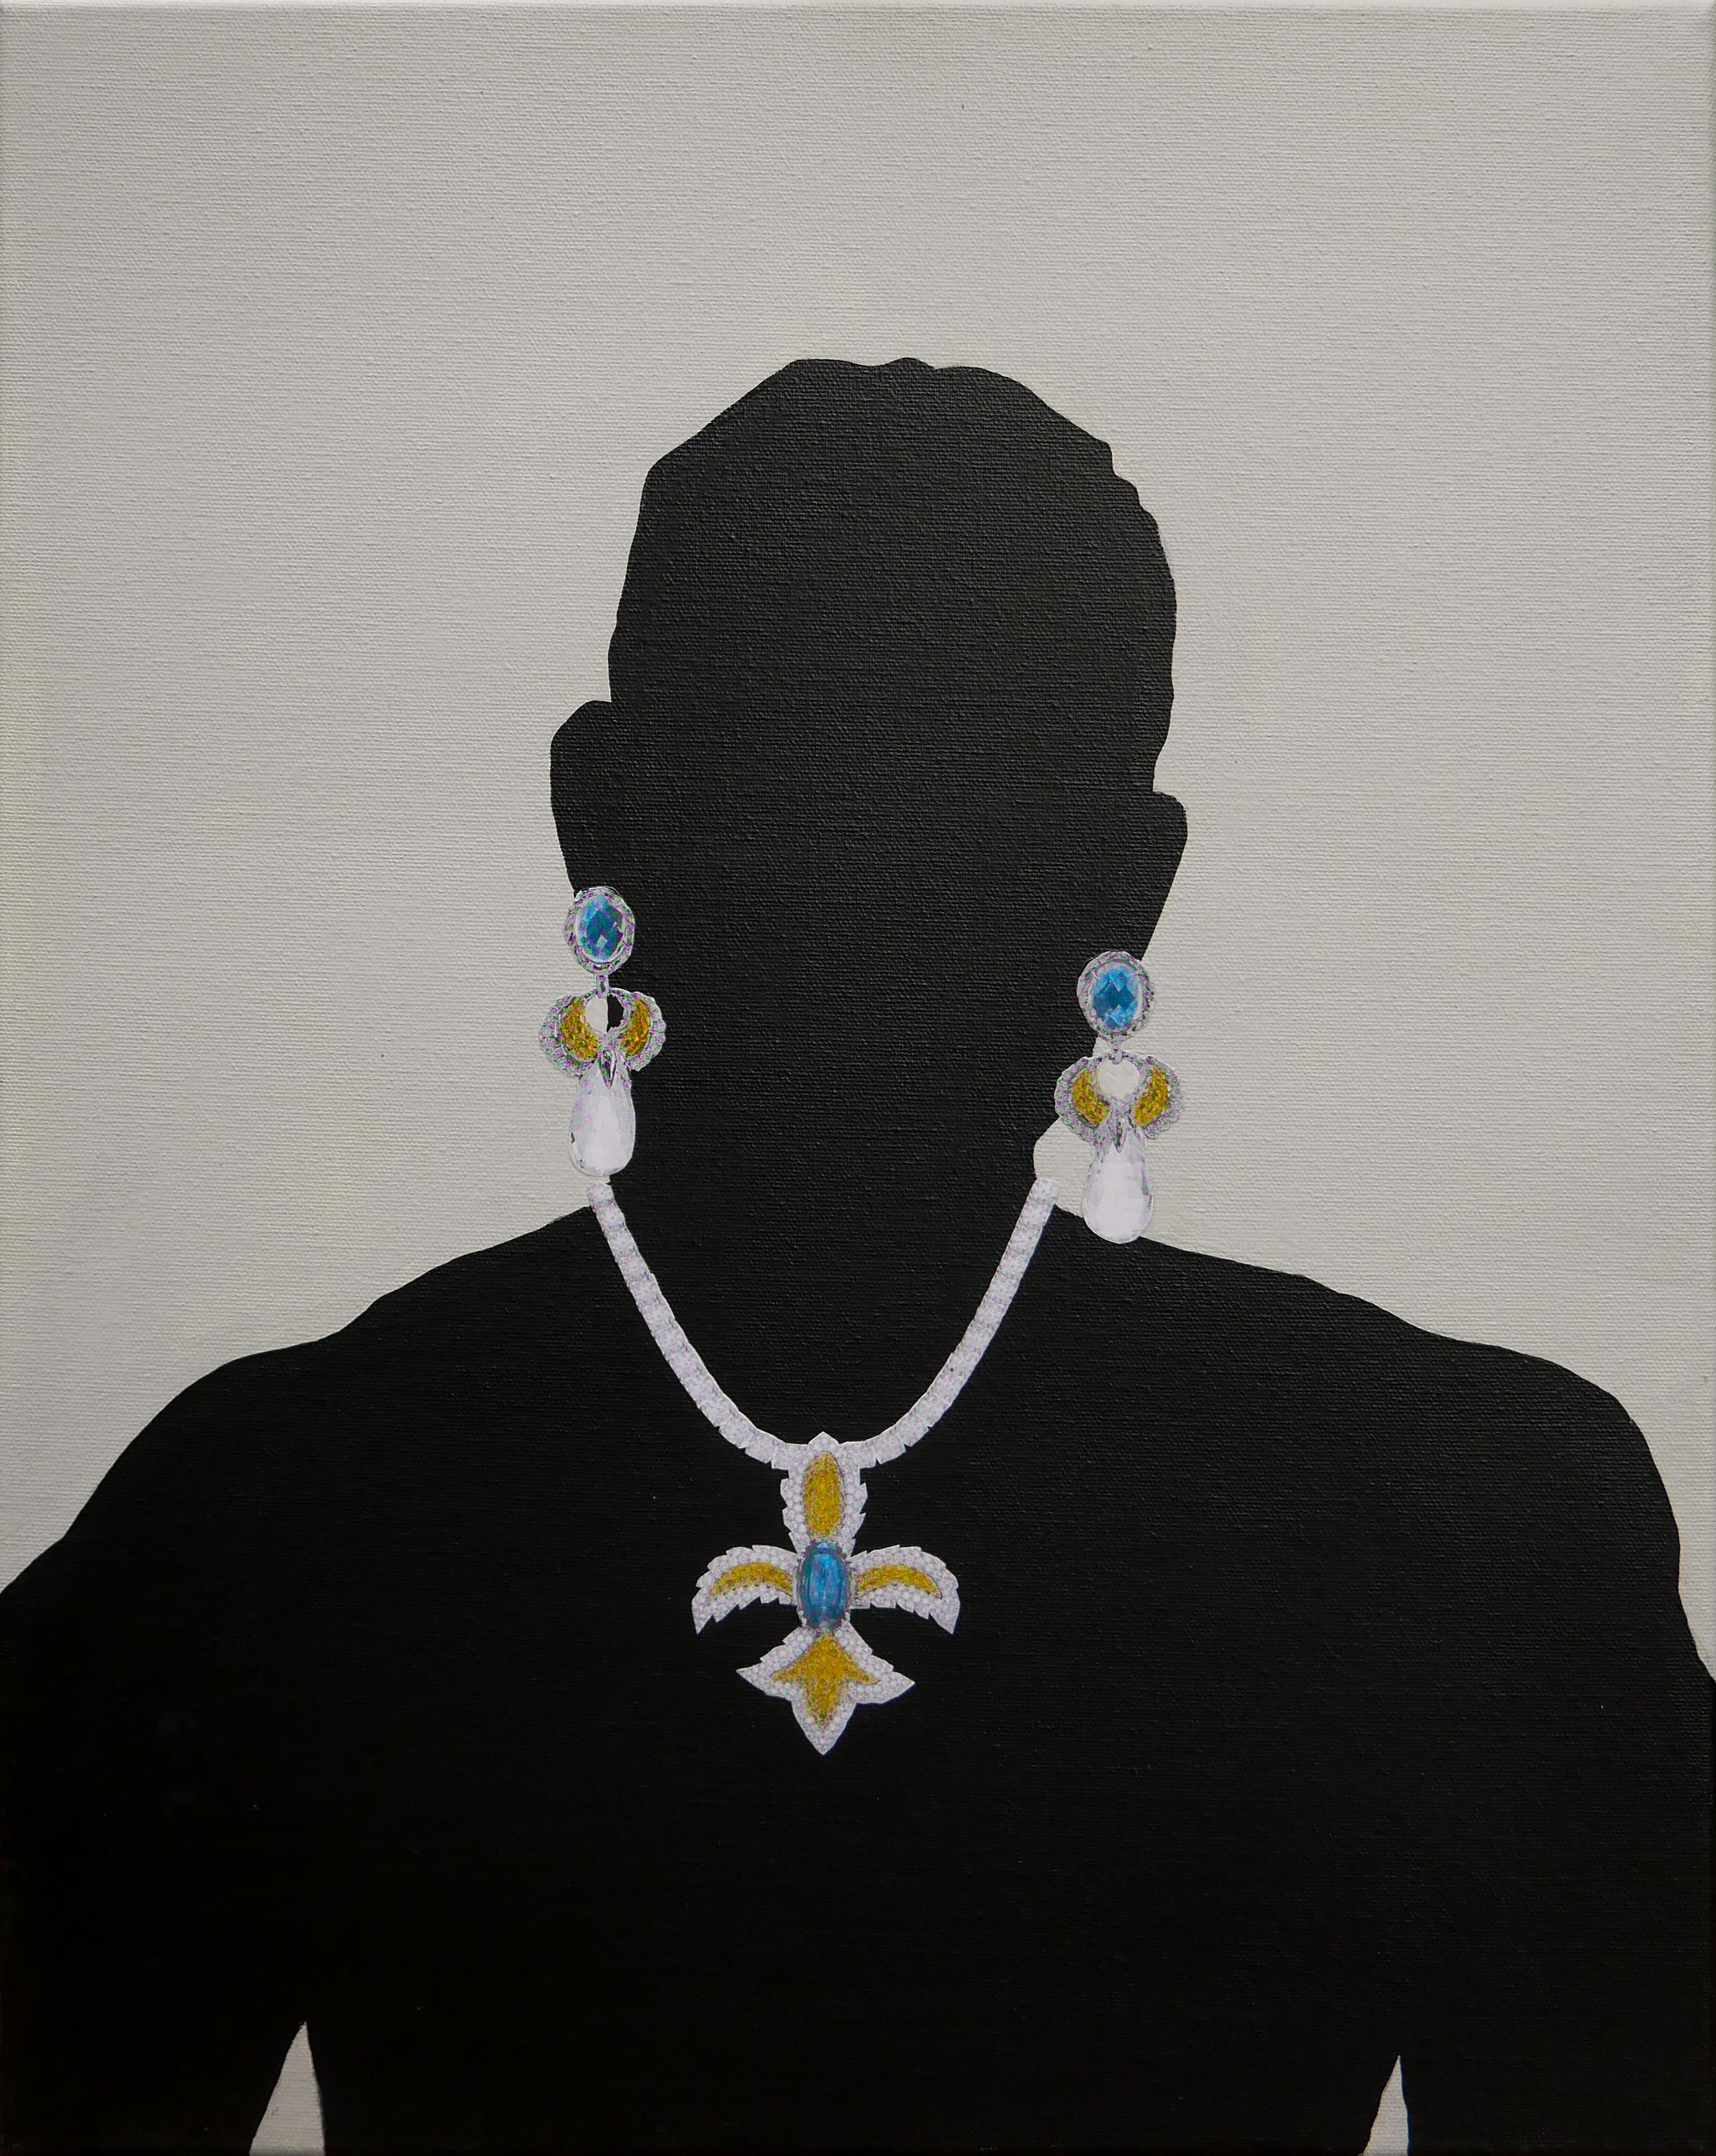 "Cal" - Peinture figurative surréaliste abstraite grise et noire représentant un homme avec des bijoux